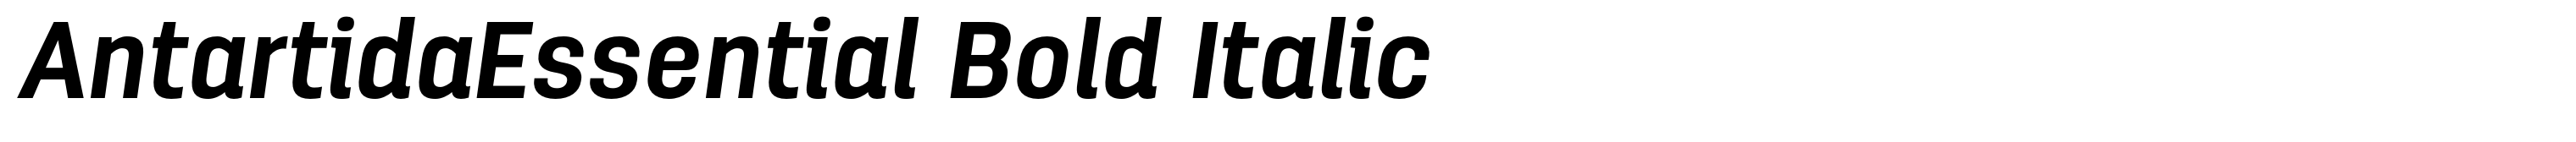 AntartidaEssential Bold Italic